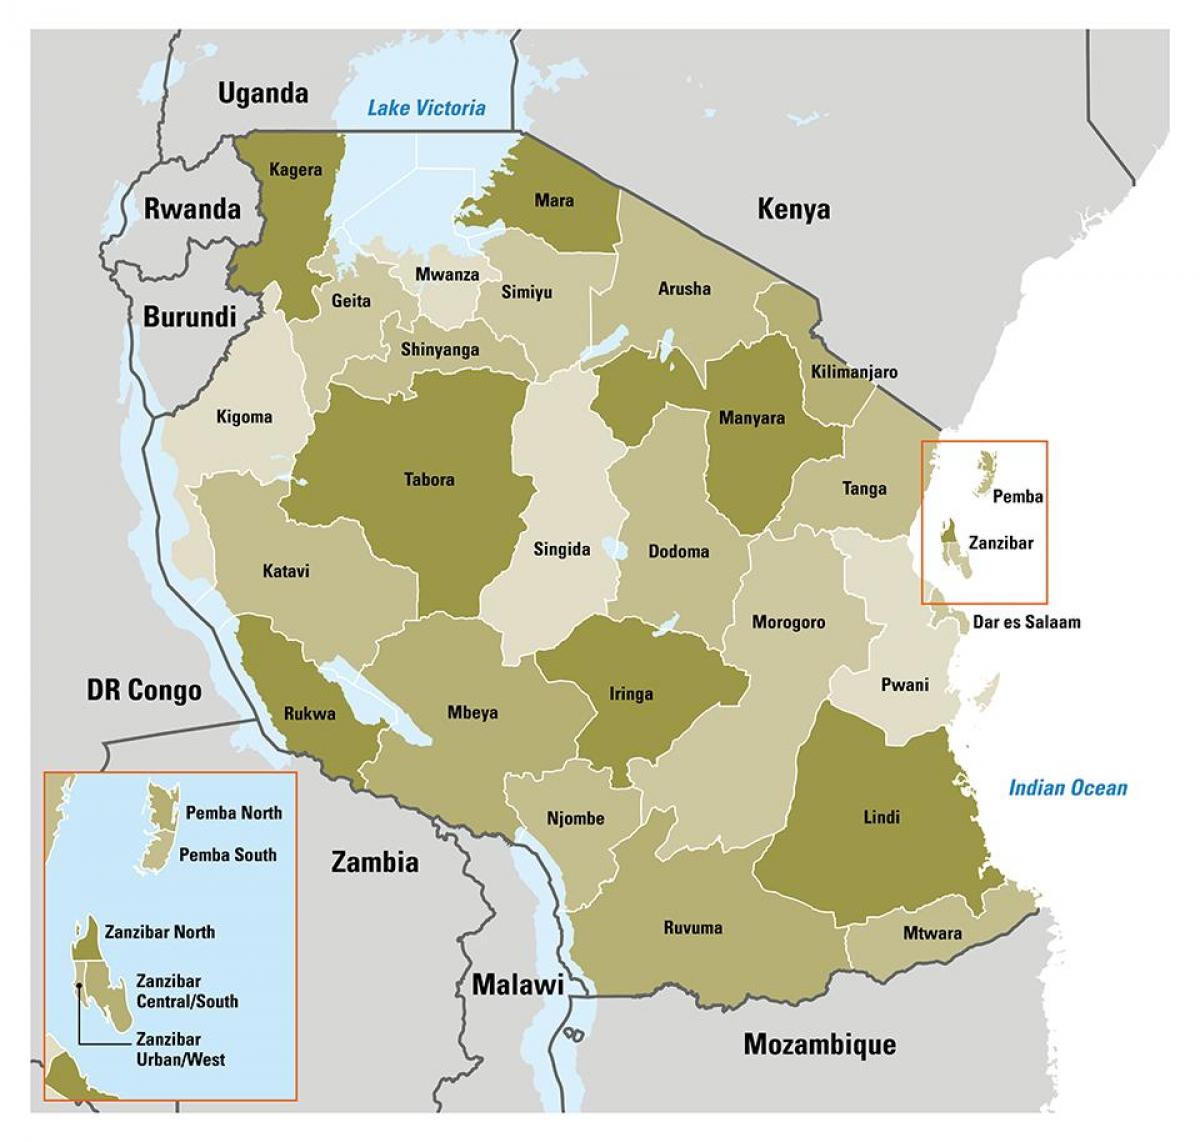 نقشہ کے تنزانیہ دکھا علاقوں